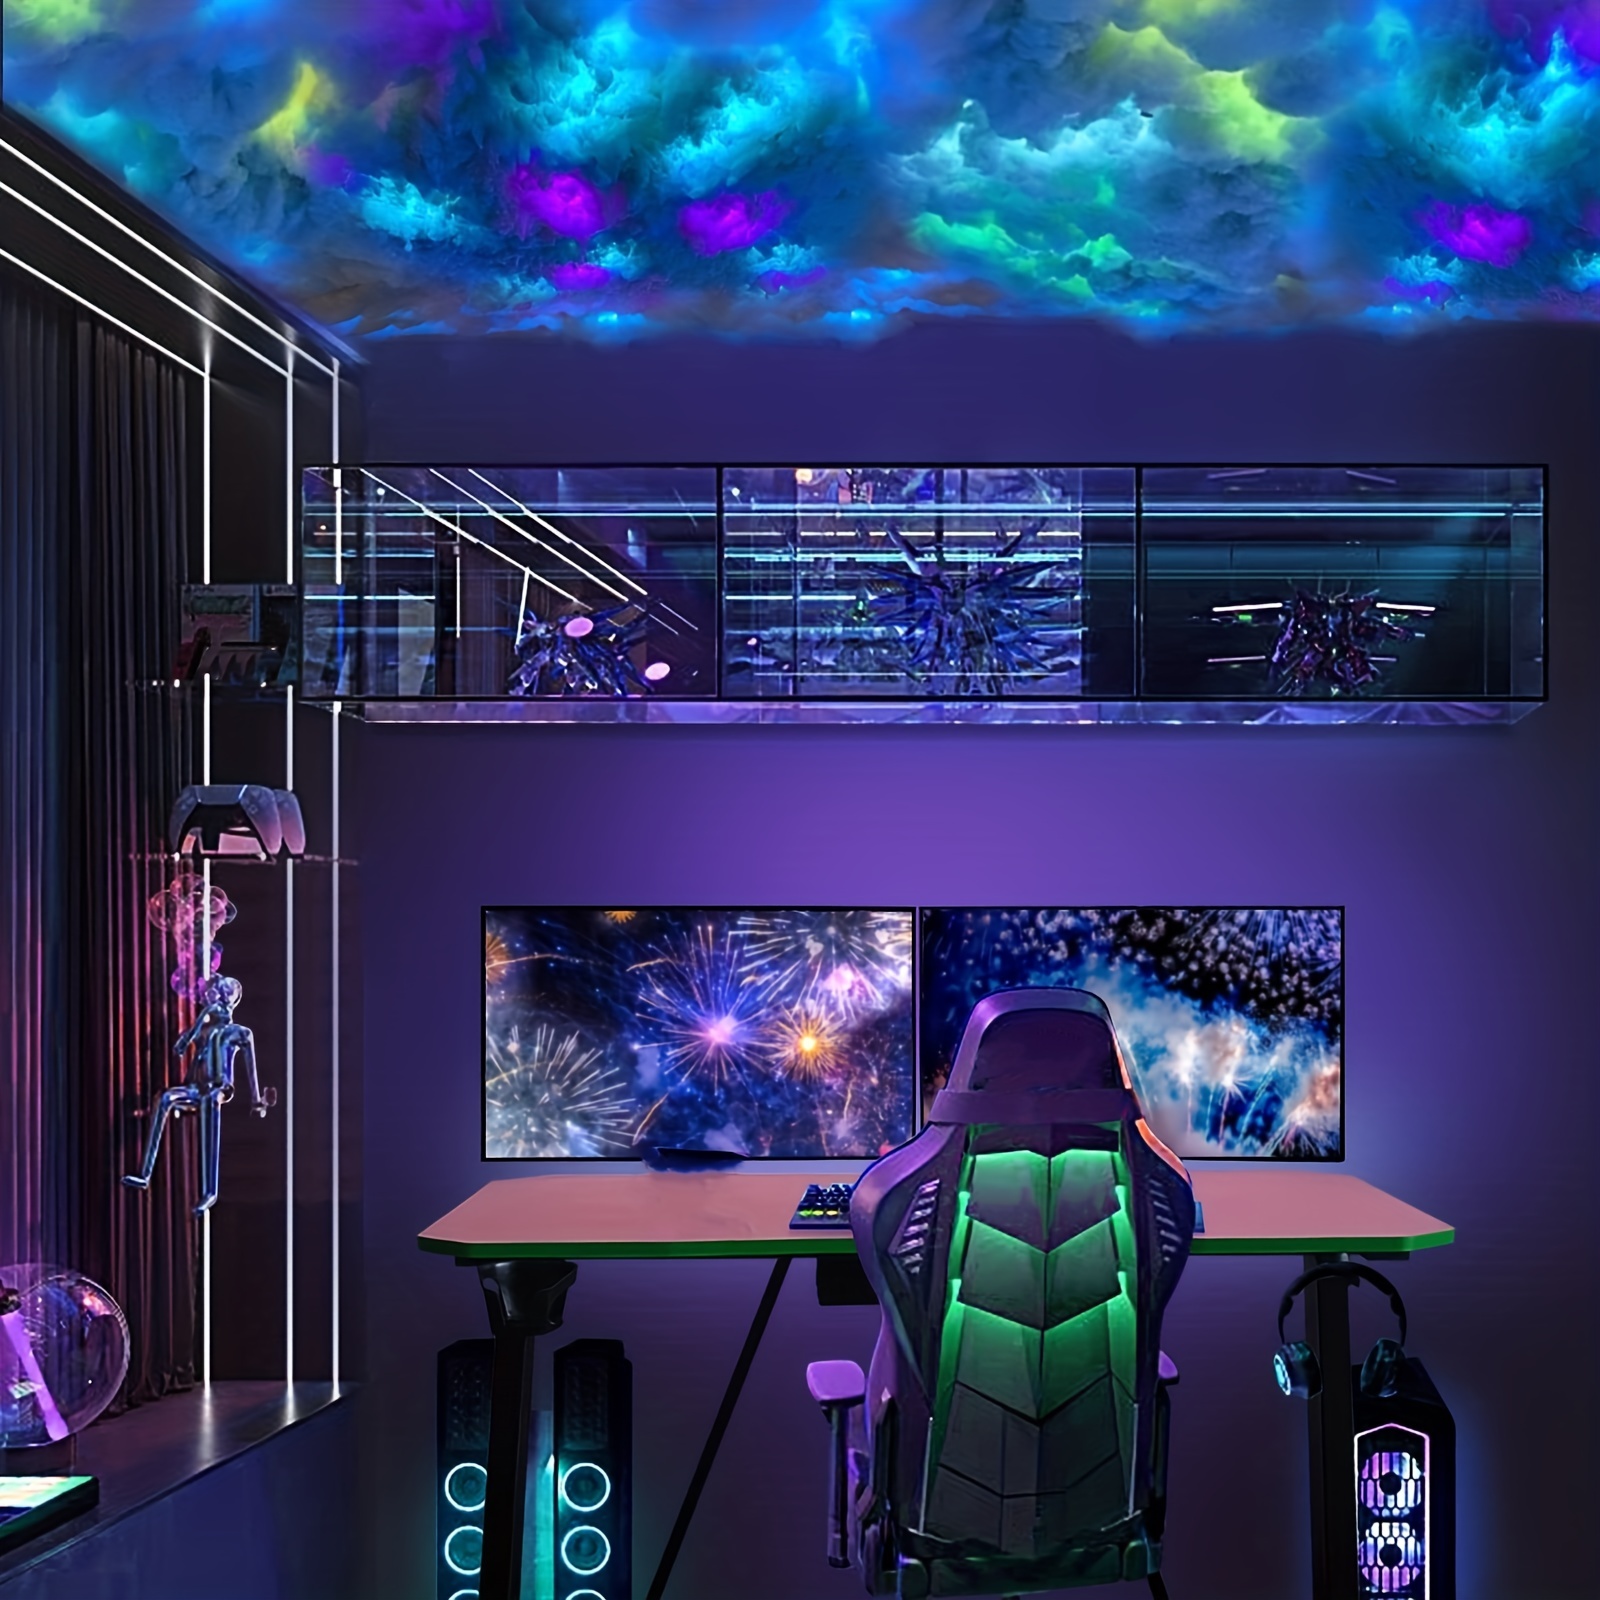 ABARROUk Déco-Desgin sur LinkedIn : #plafond #nuage #led #chambre #gaming  #decoration #deco…